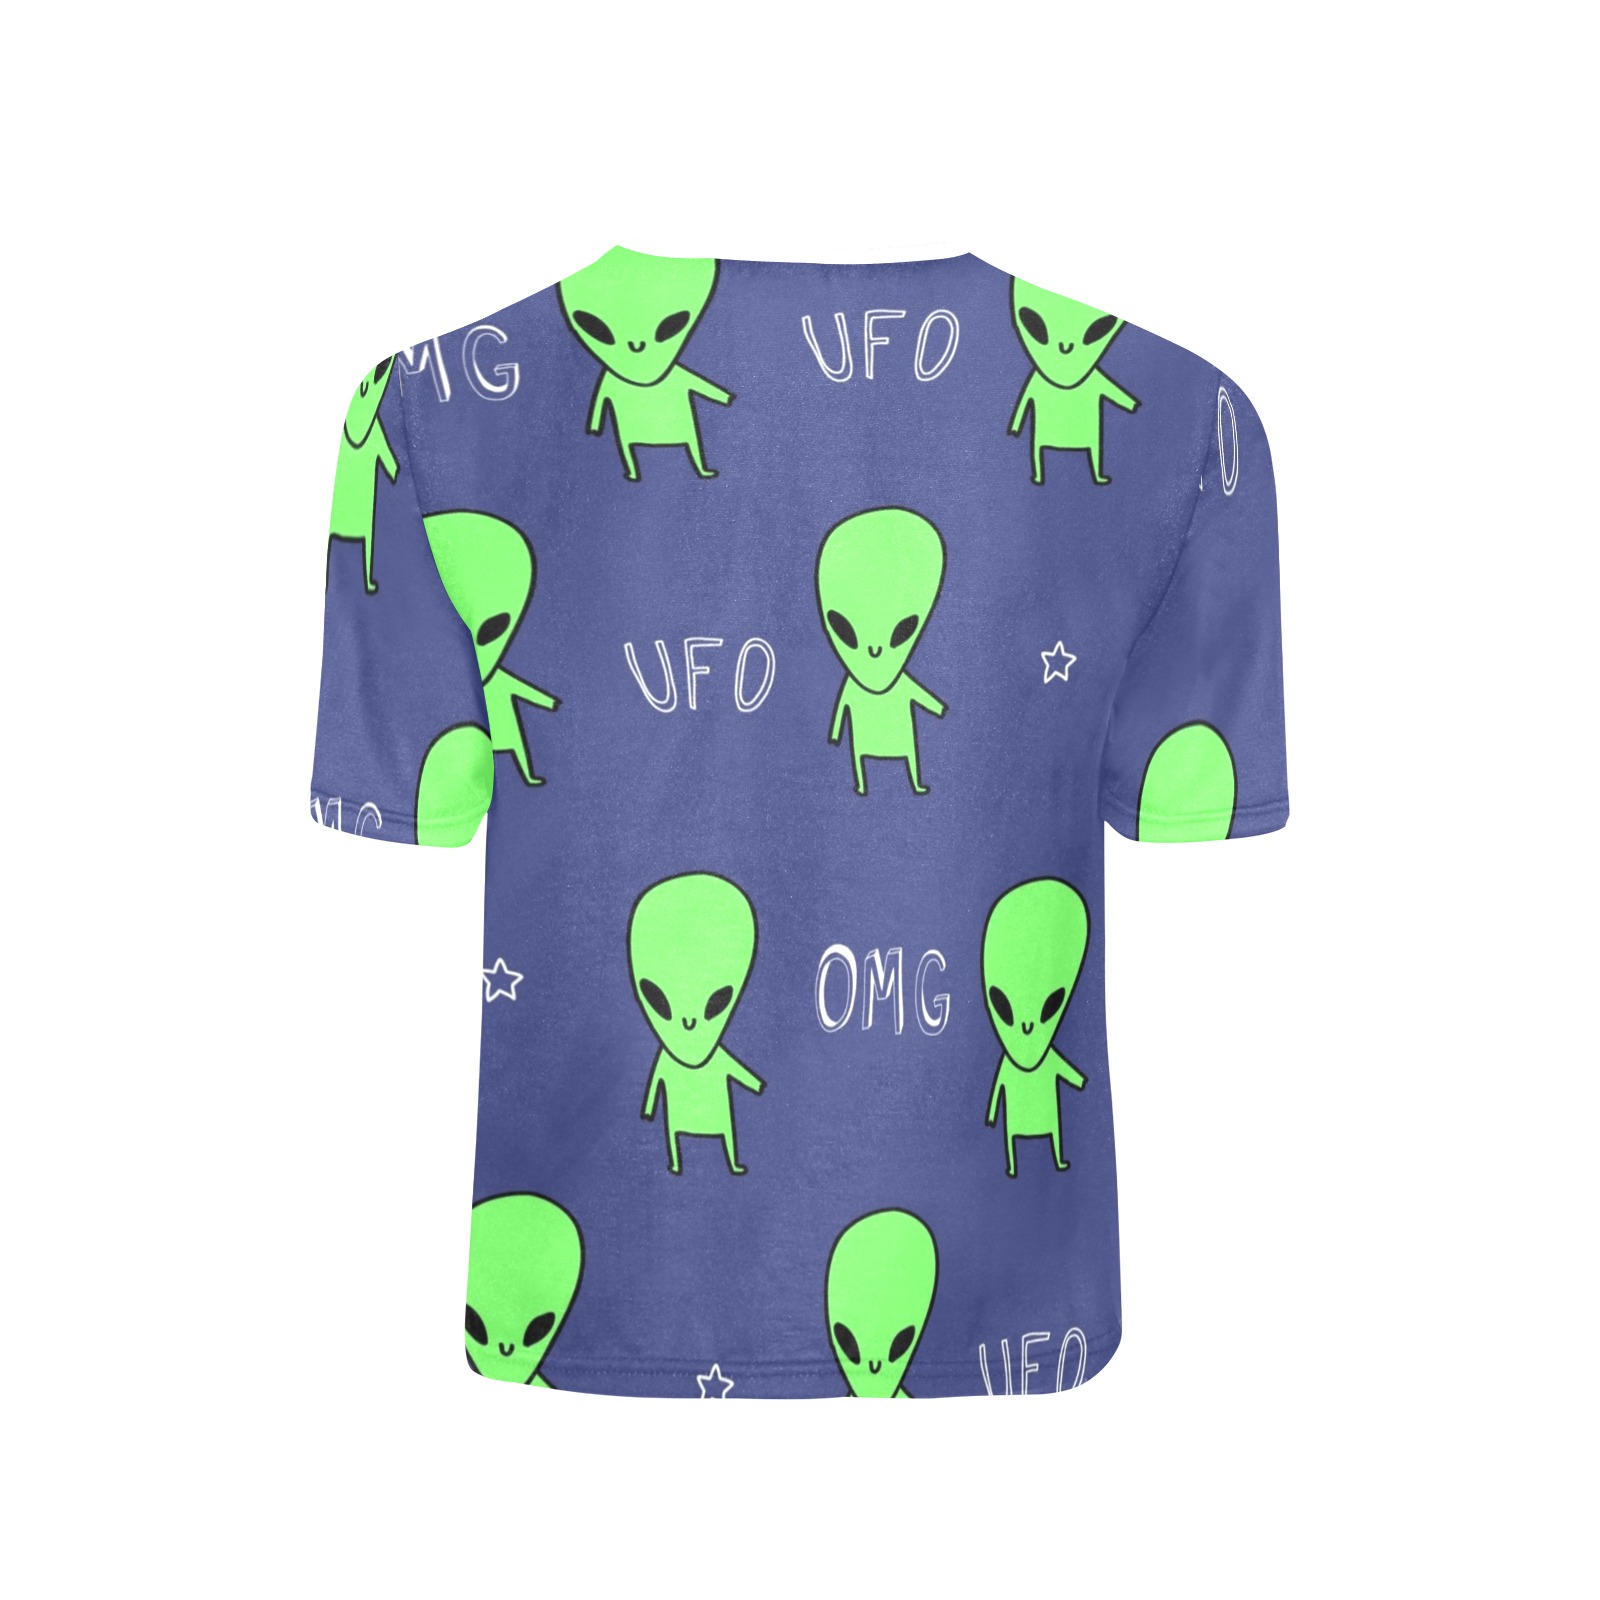 Alien Tees for kids Little Boys' All Over Print Crew Neck T-Shirt (Model T40-2)